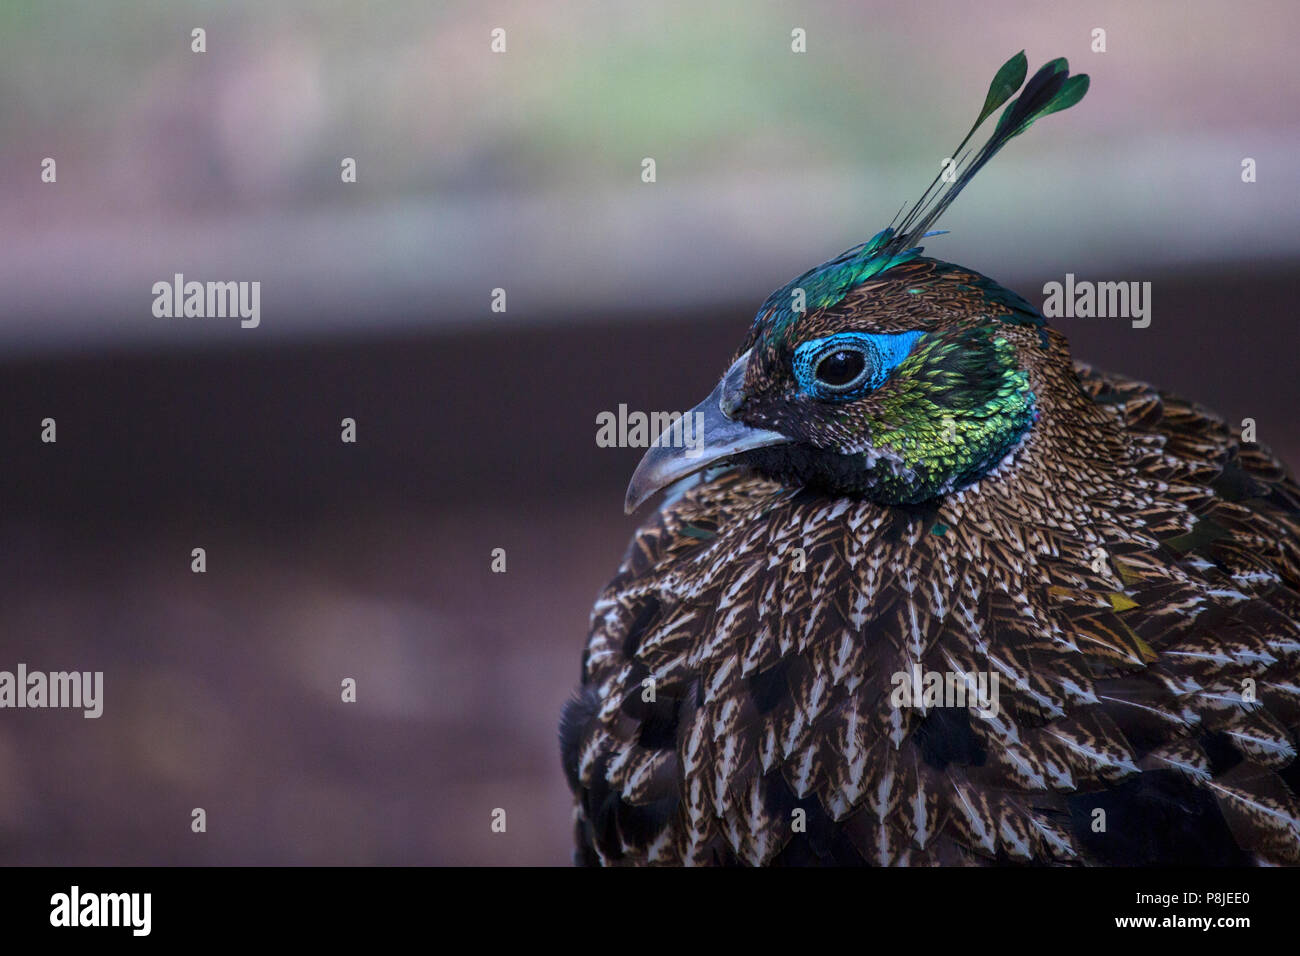 Eine Monal Fasan Henne (weiblich) Uhren vorsichtig wie Ihr Foto gemacht wird. Bild zeigt dieses nationalen Vogel von Nepal (meistens) im Profil gegen eine Soft Focus b Stockfoto